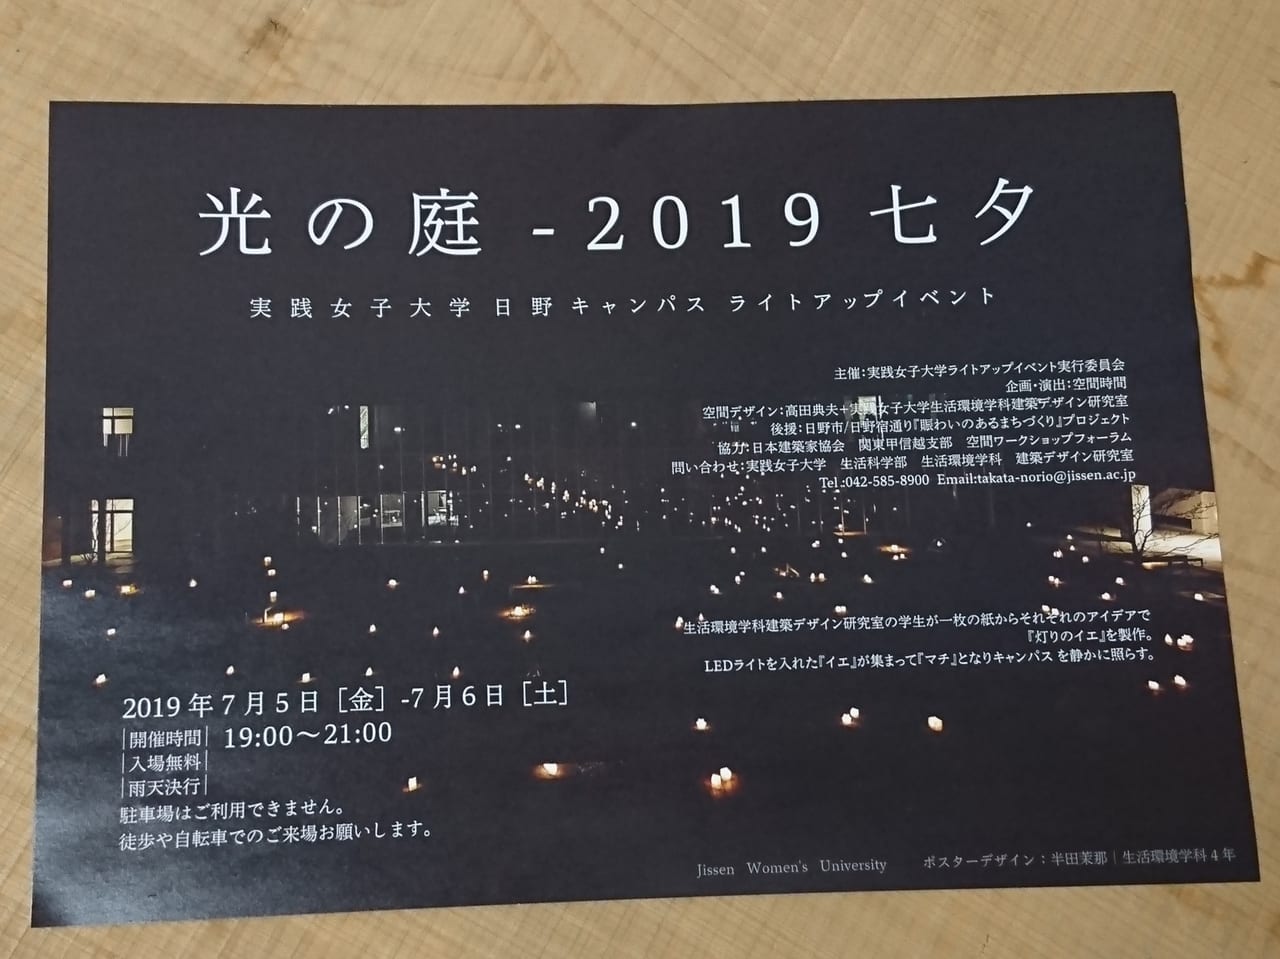 実践女子大学日野キャンパスで開催される「光の庭2019七夕」のチラシ